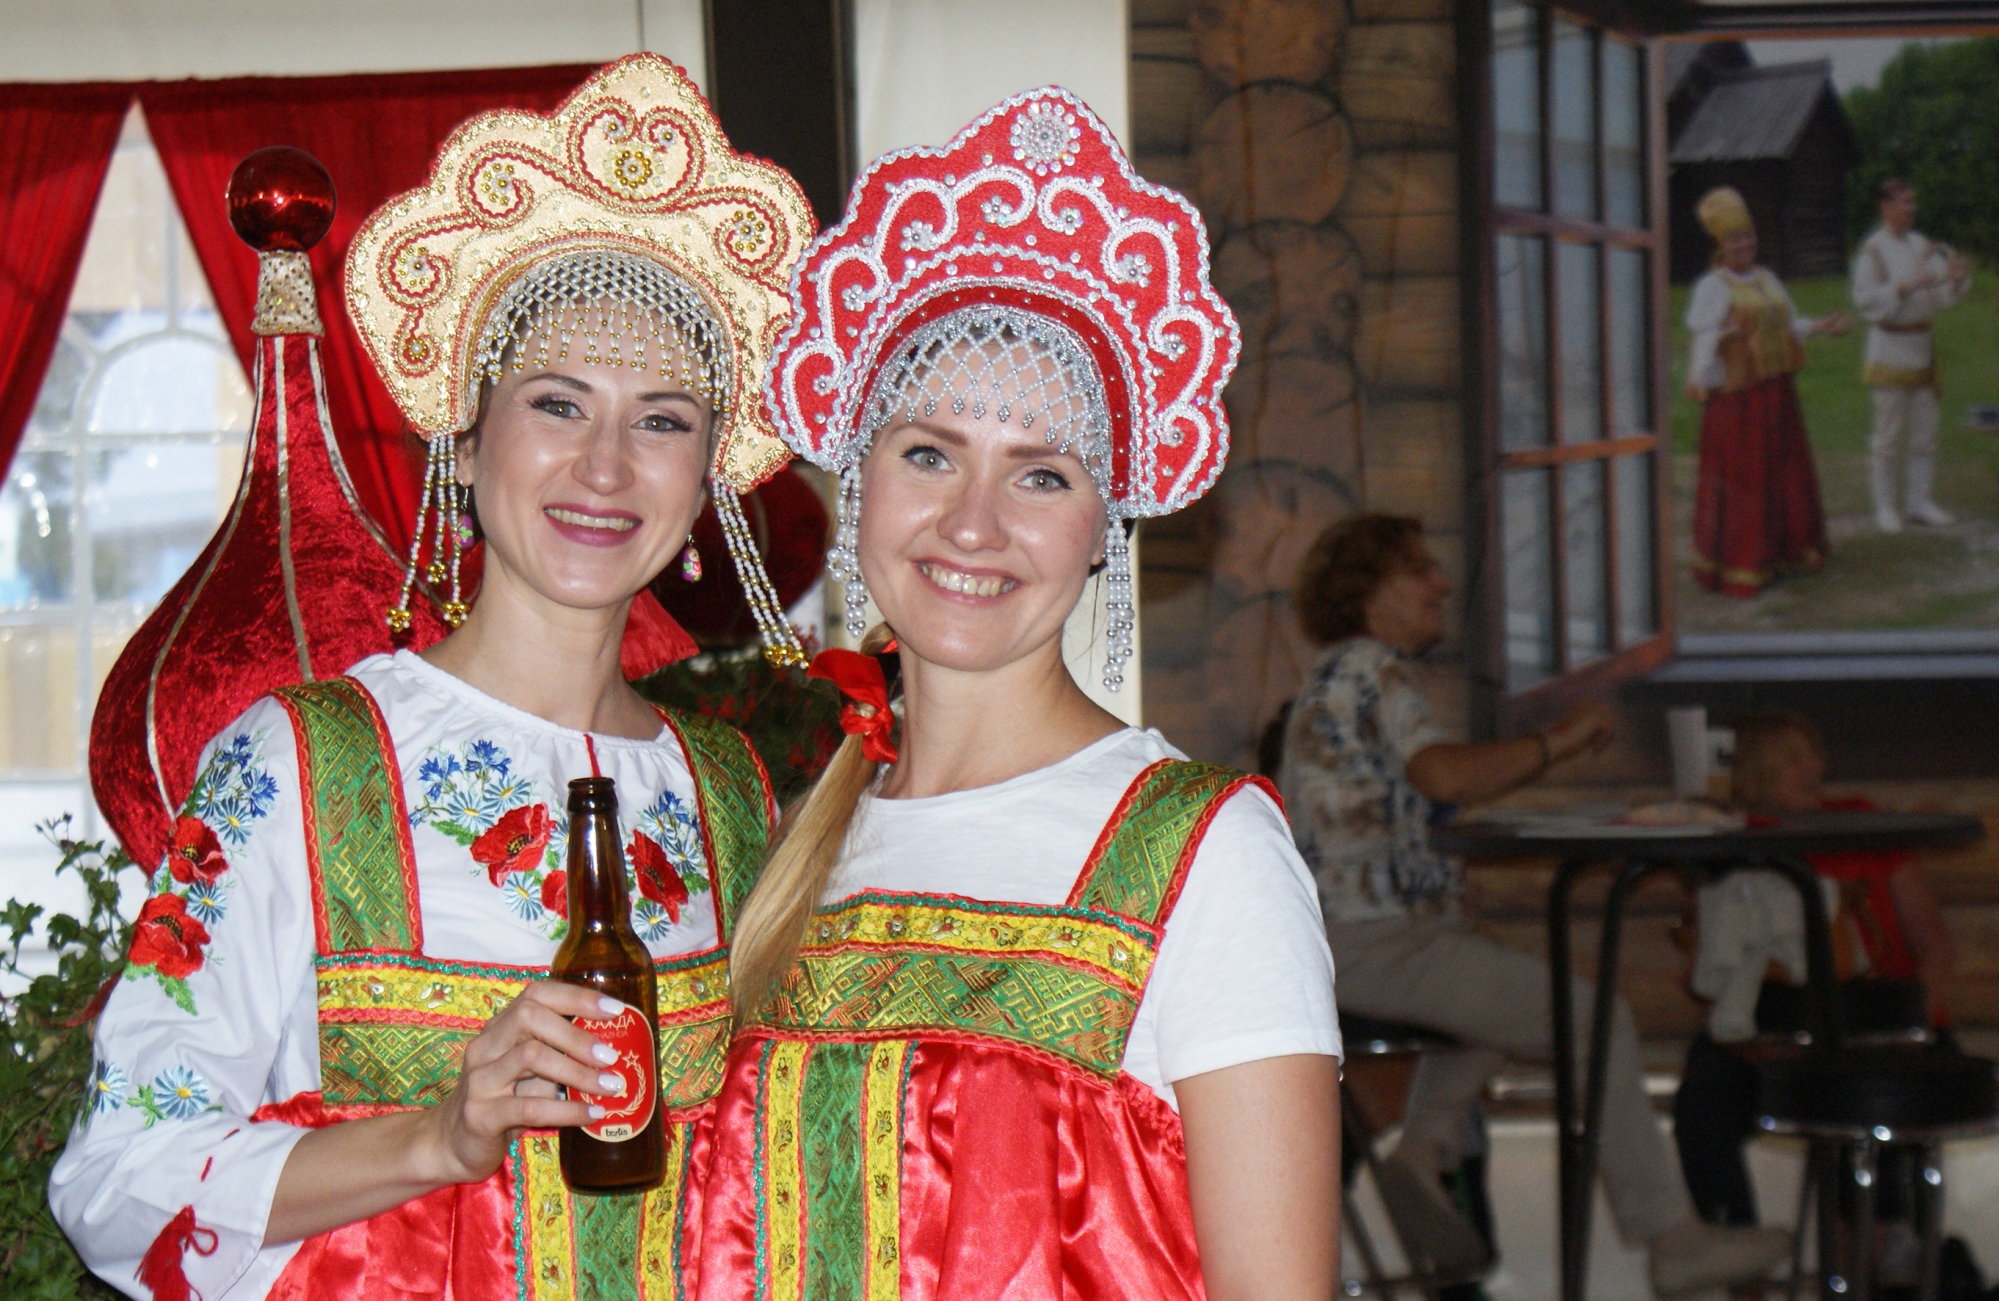 Maria et Rimma, tout sourire, accueillent les visiteurs dans la Datcha, construite et décorée spécialement sur la place principale de Vetrograd, où les visiteurs de passage peuvent déguster une bière spéciale estampillée d’un drapeau russe légèrement revu et corrigé pour l’occasion.